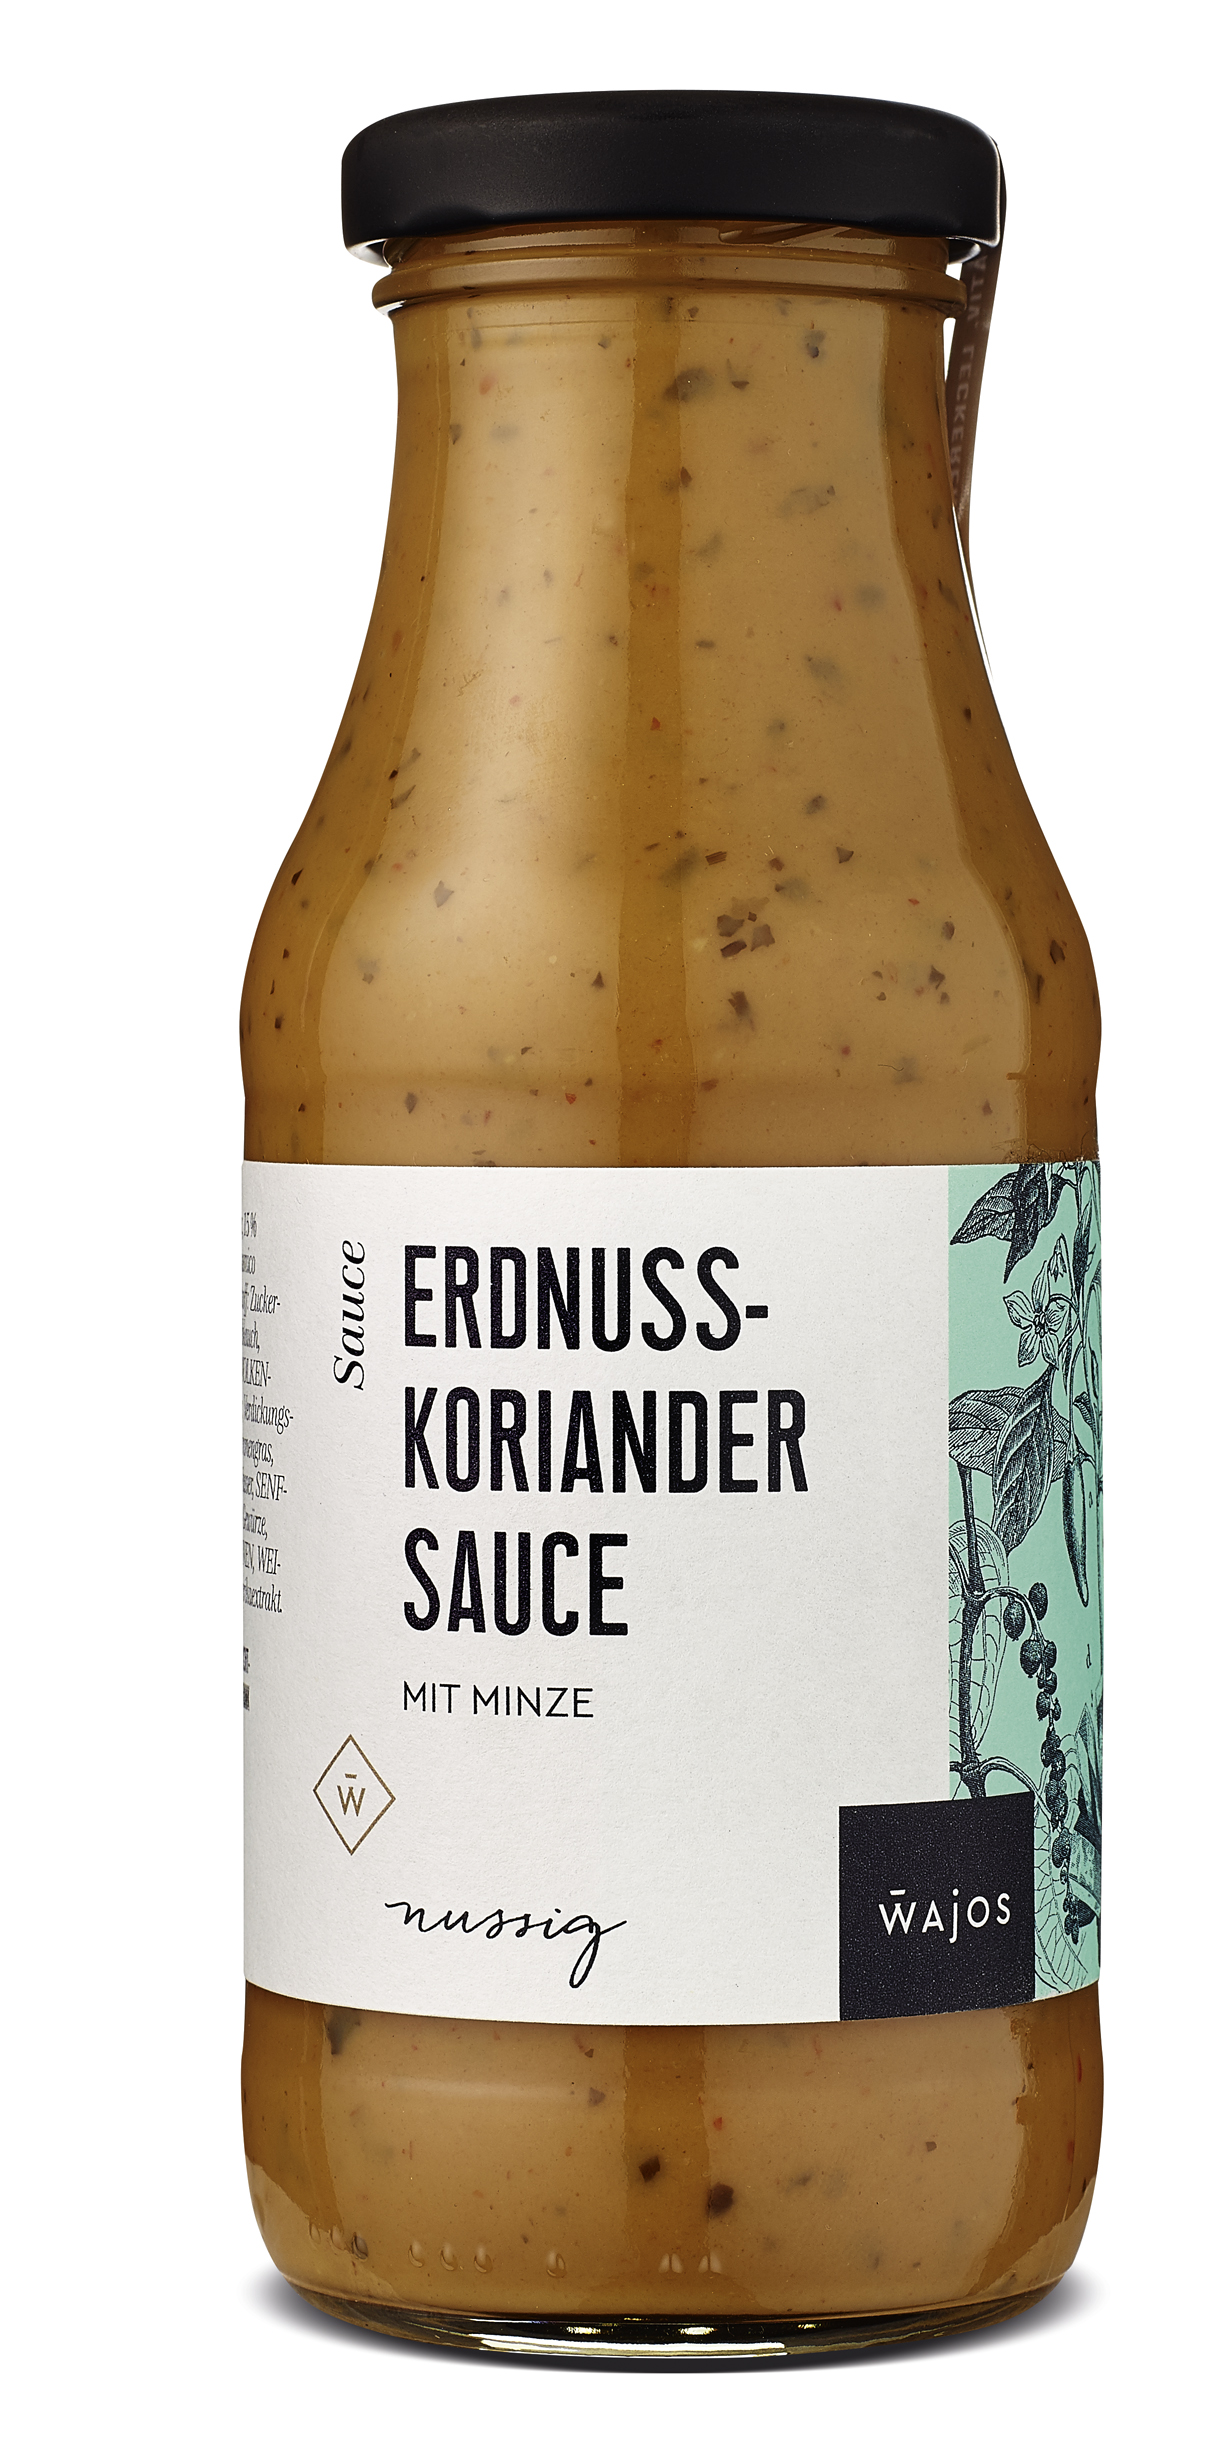 Erdnuss-Koriander Sauce mit Minze